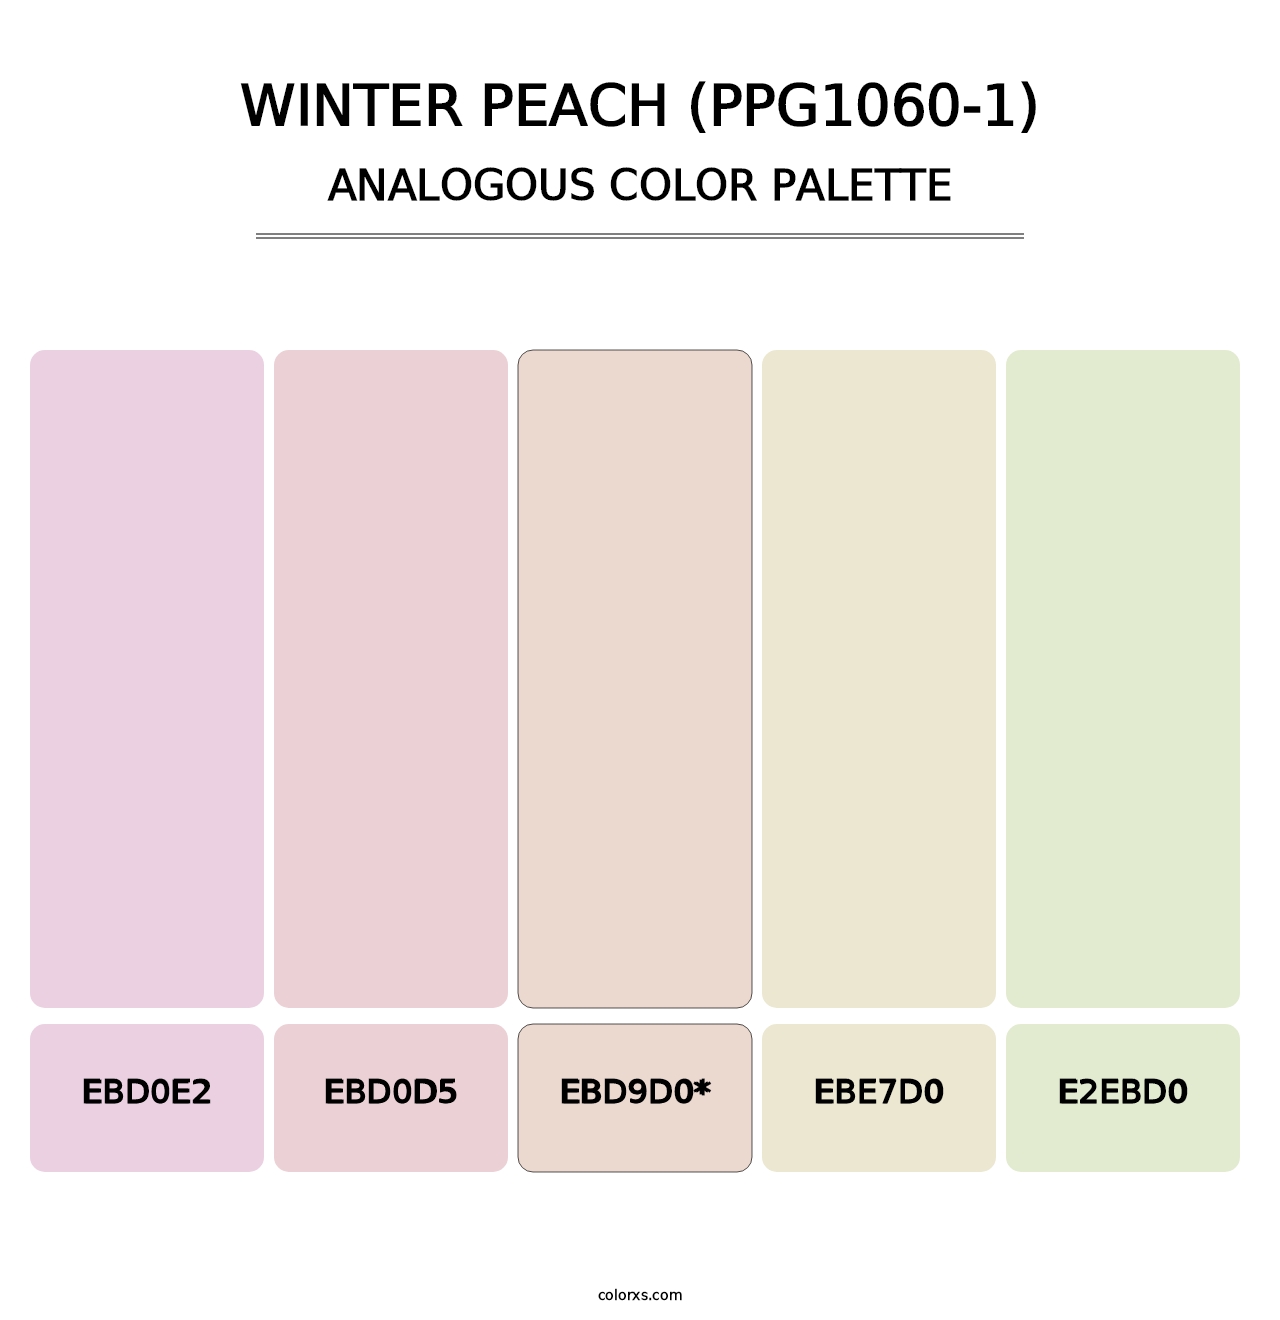 Winter Peach (PPG1060-1) - Analogous Color Palette